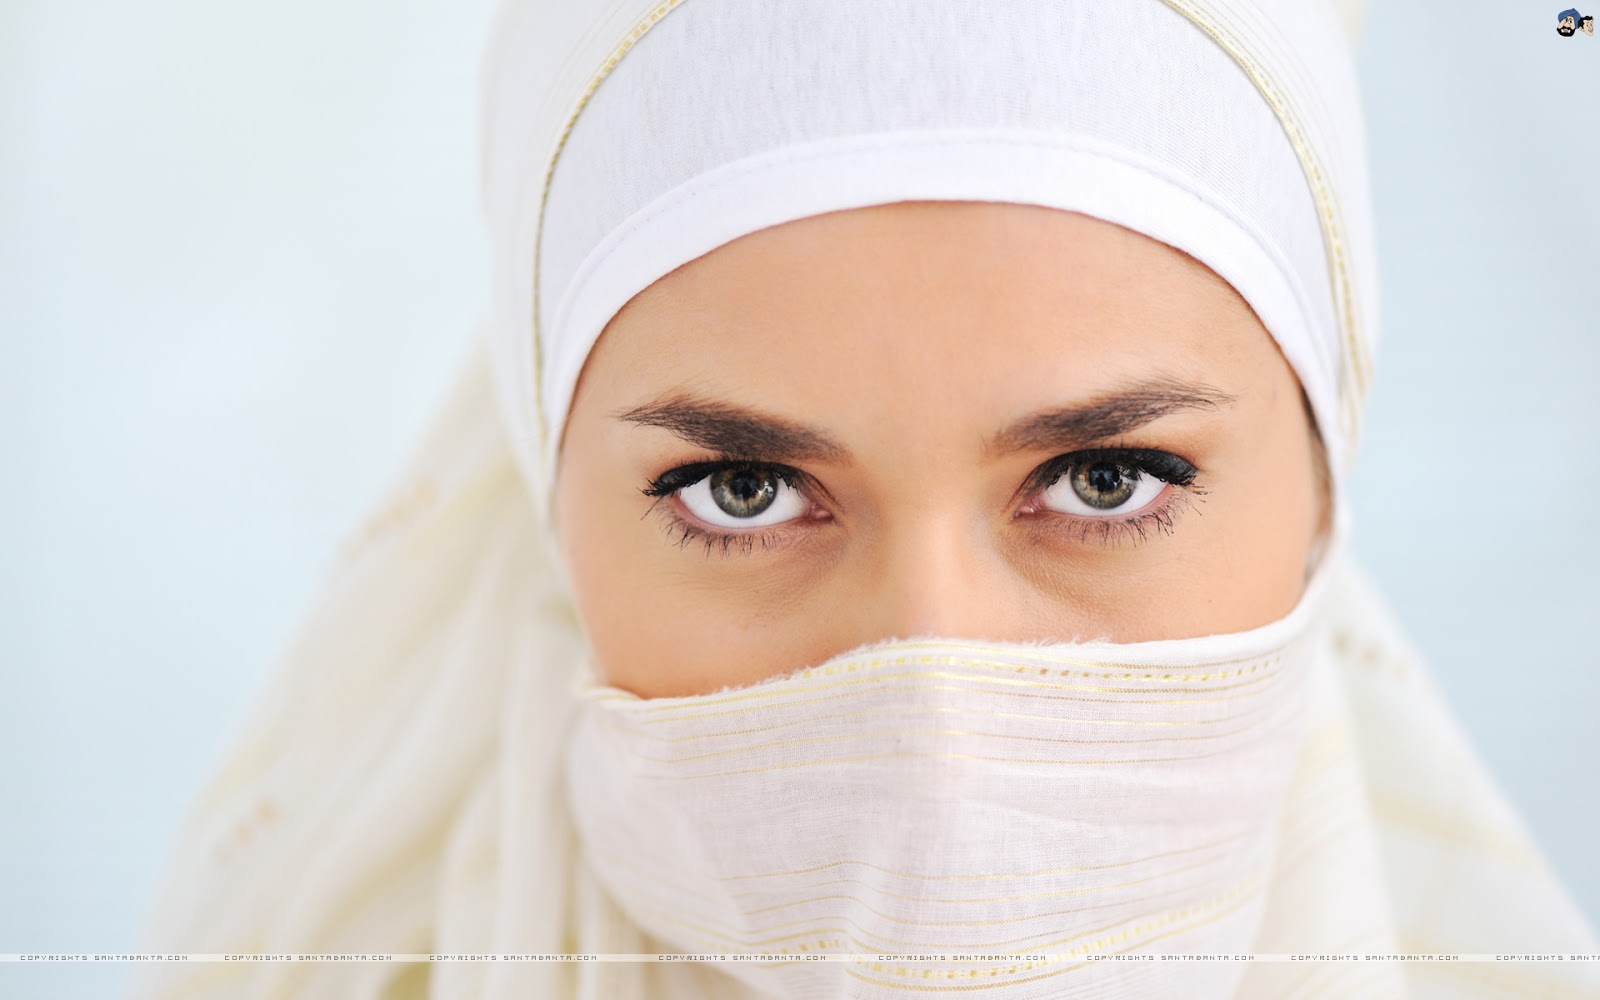 Koleksi Wallpaper Wanita Muslimah Bercadar - Fauzi Blog